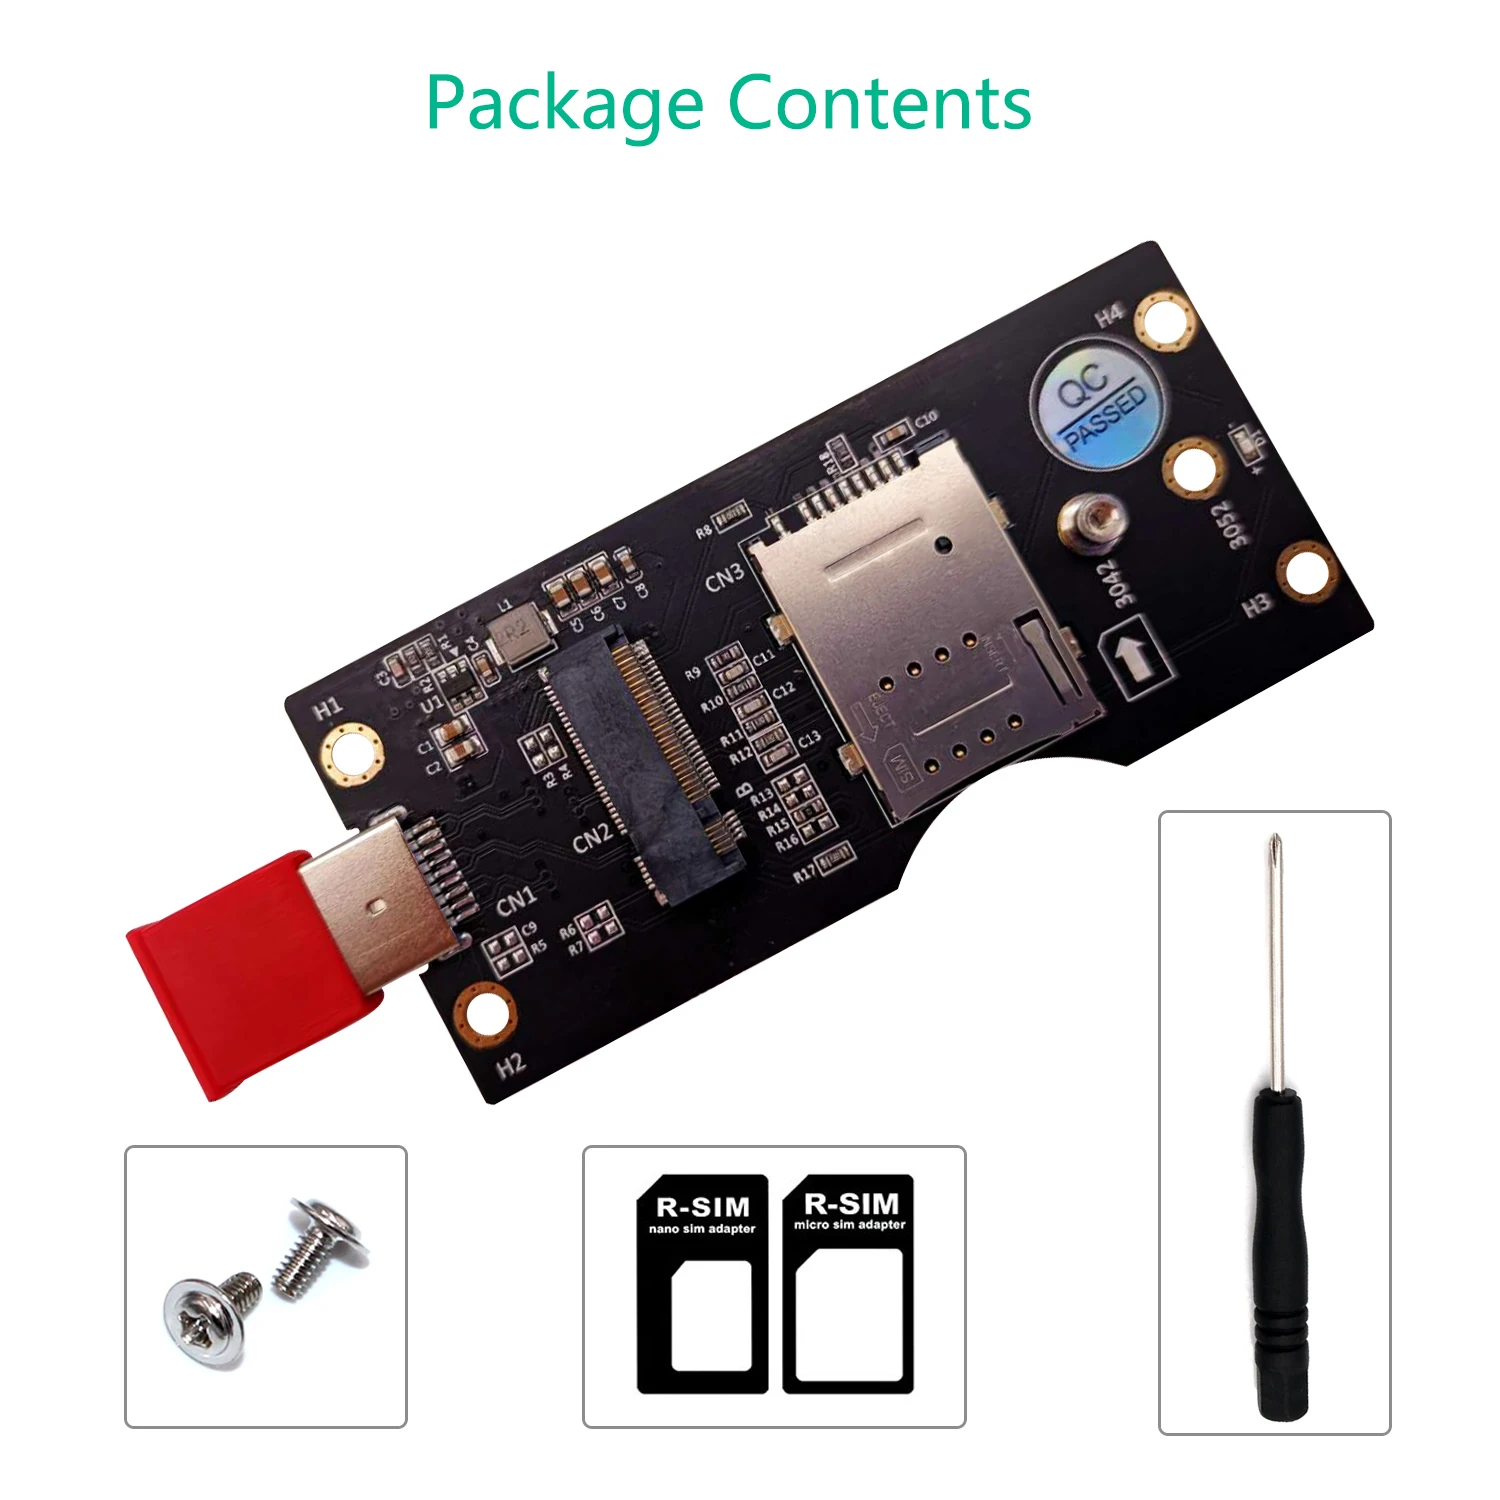 NGFF(M. 2) Mygtukas B kortelė, USB 3.0 Adapteris su SIM 8pin kortelės Lizdas 3G/4G/5G Modulio laikiklis SIM 8pin kortelės jungtis - 5